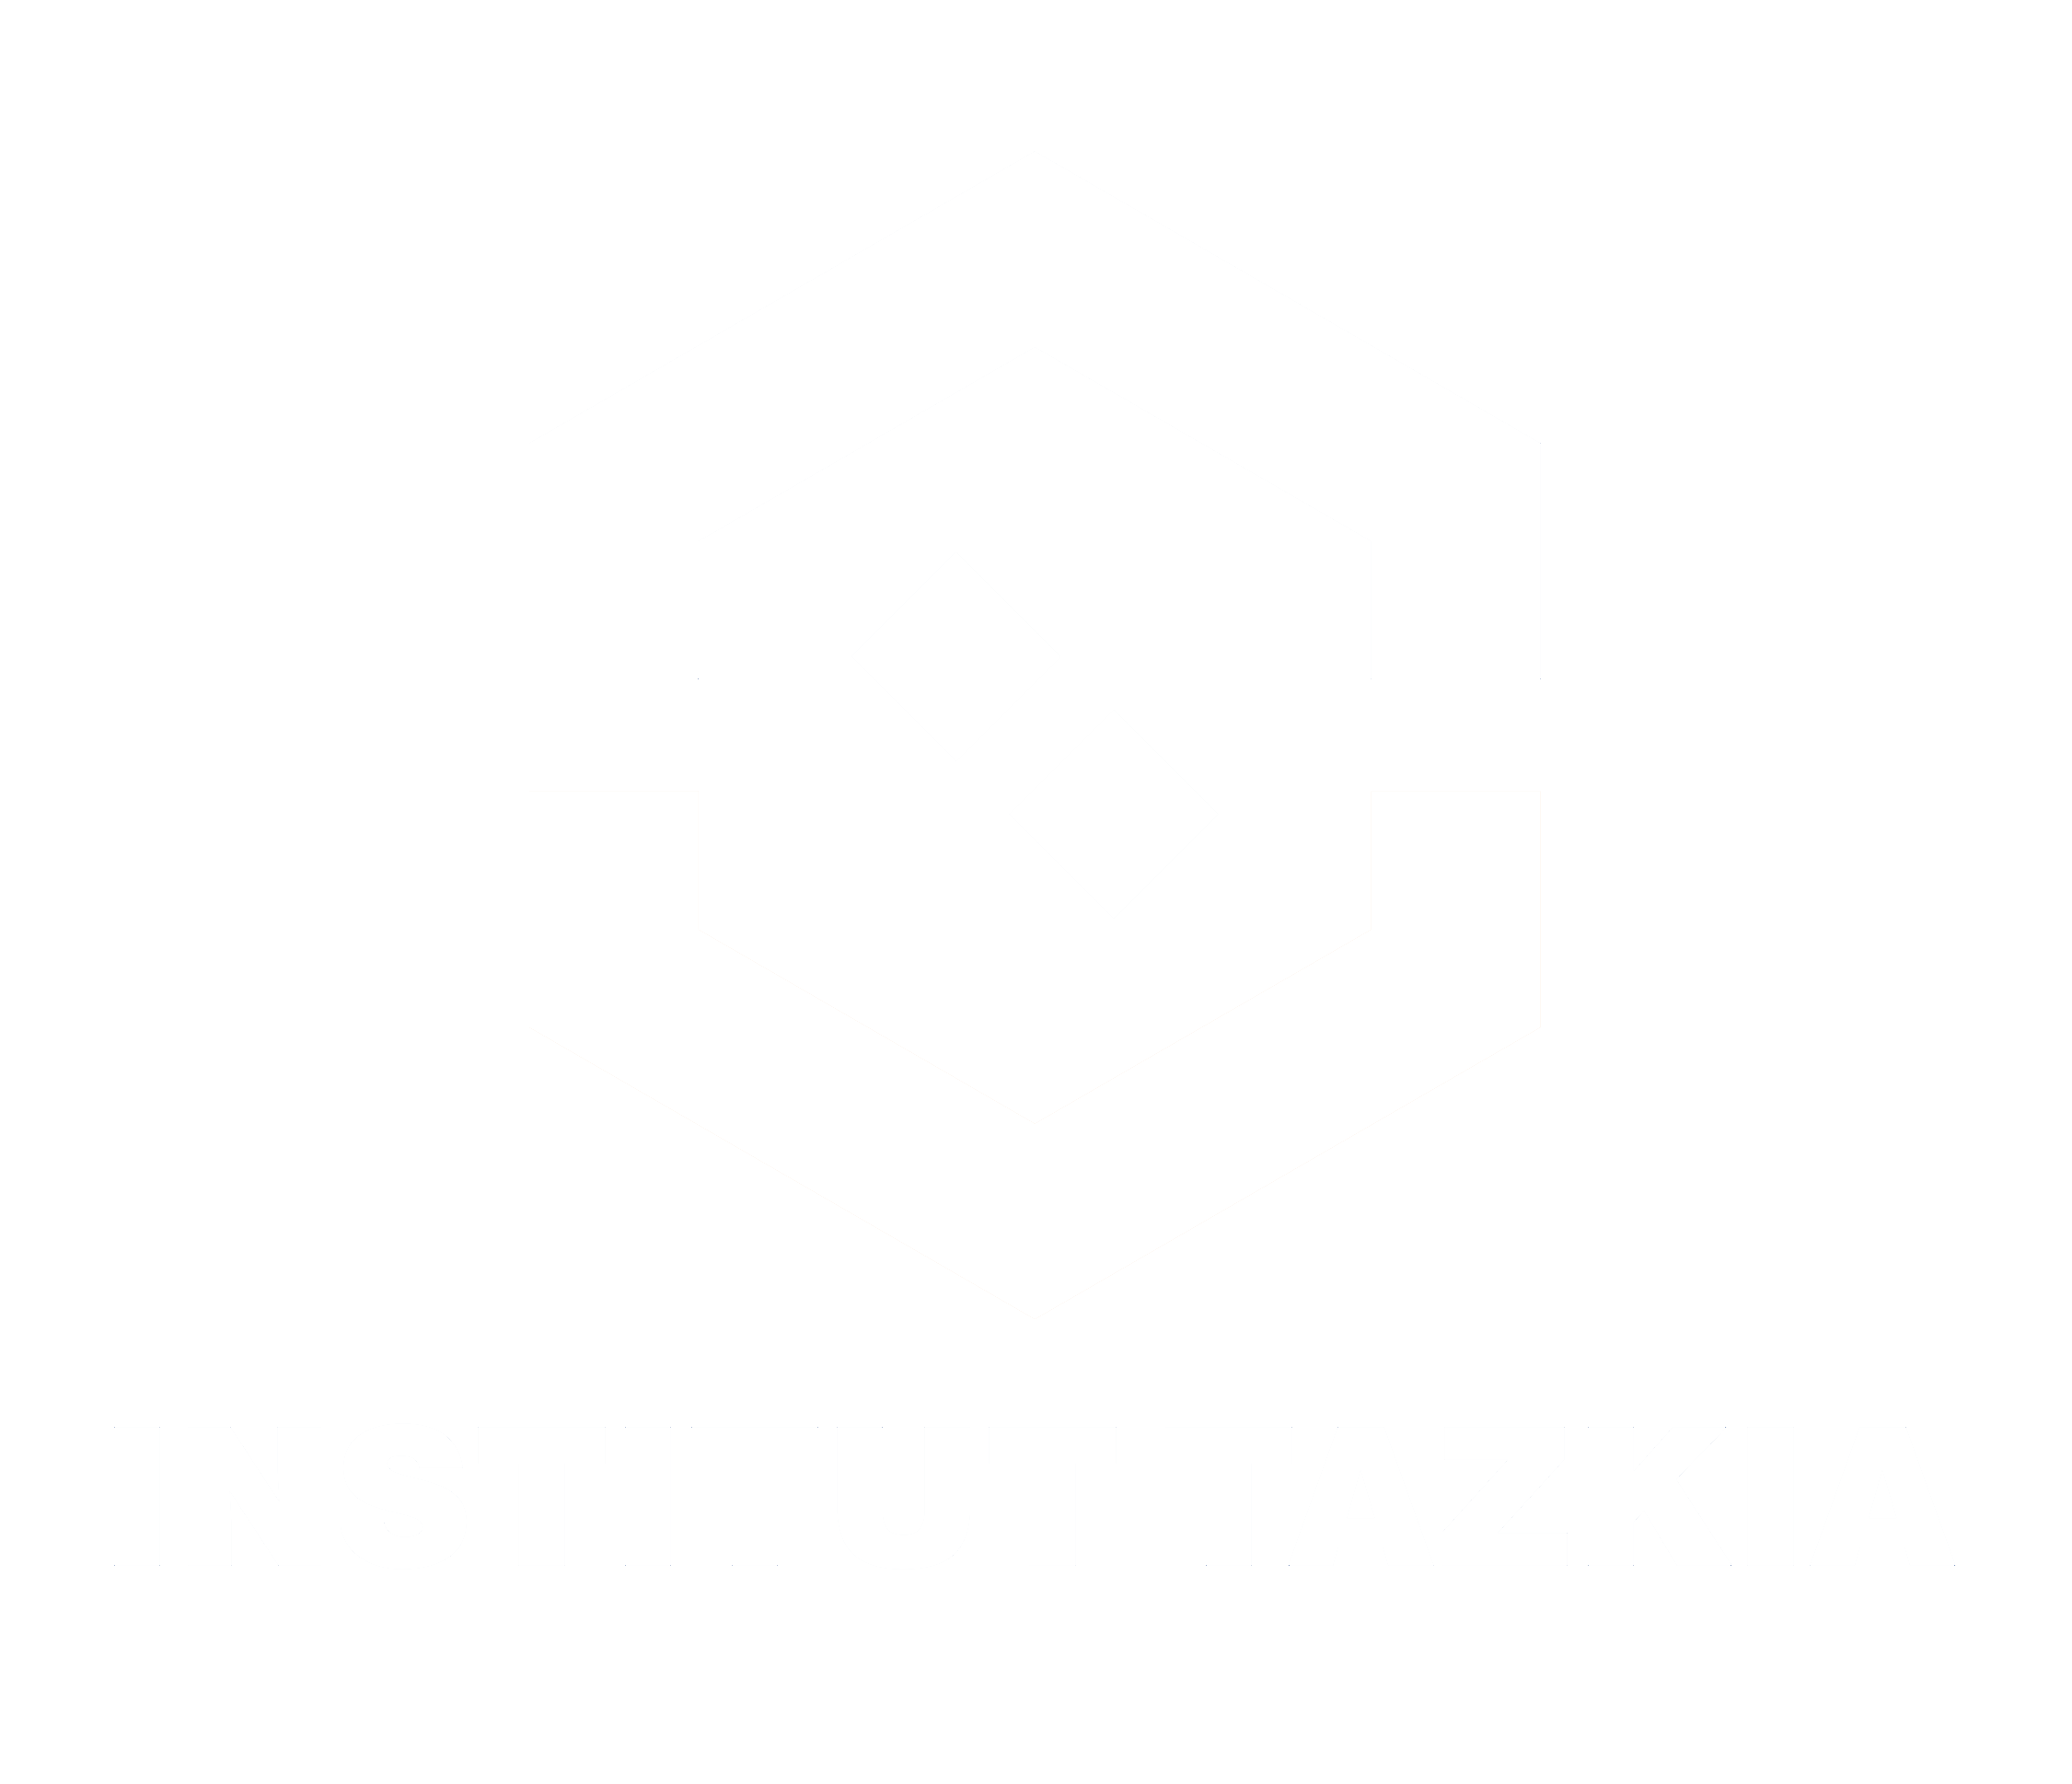 logo tazkia mini